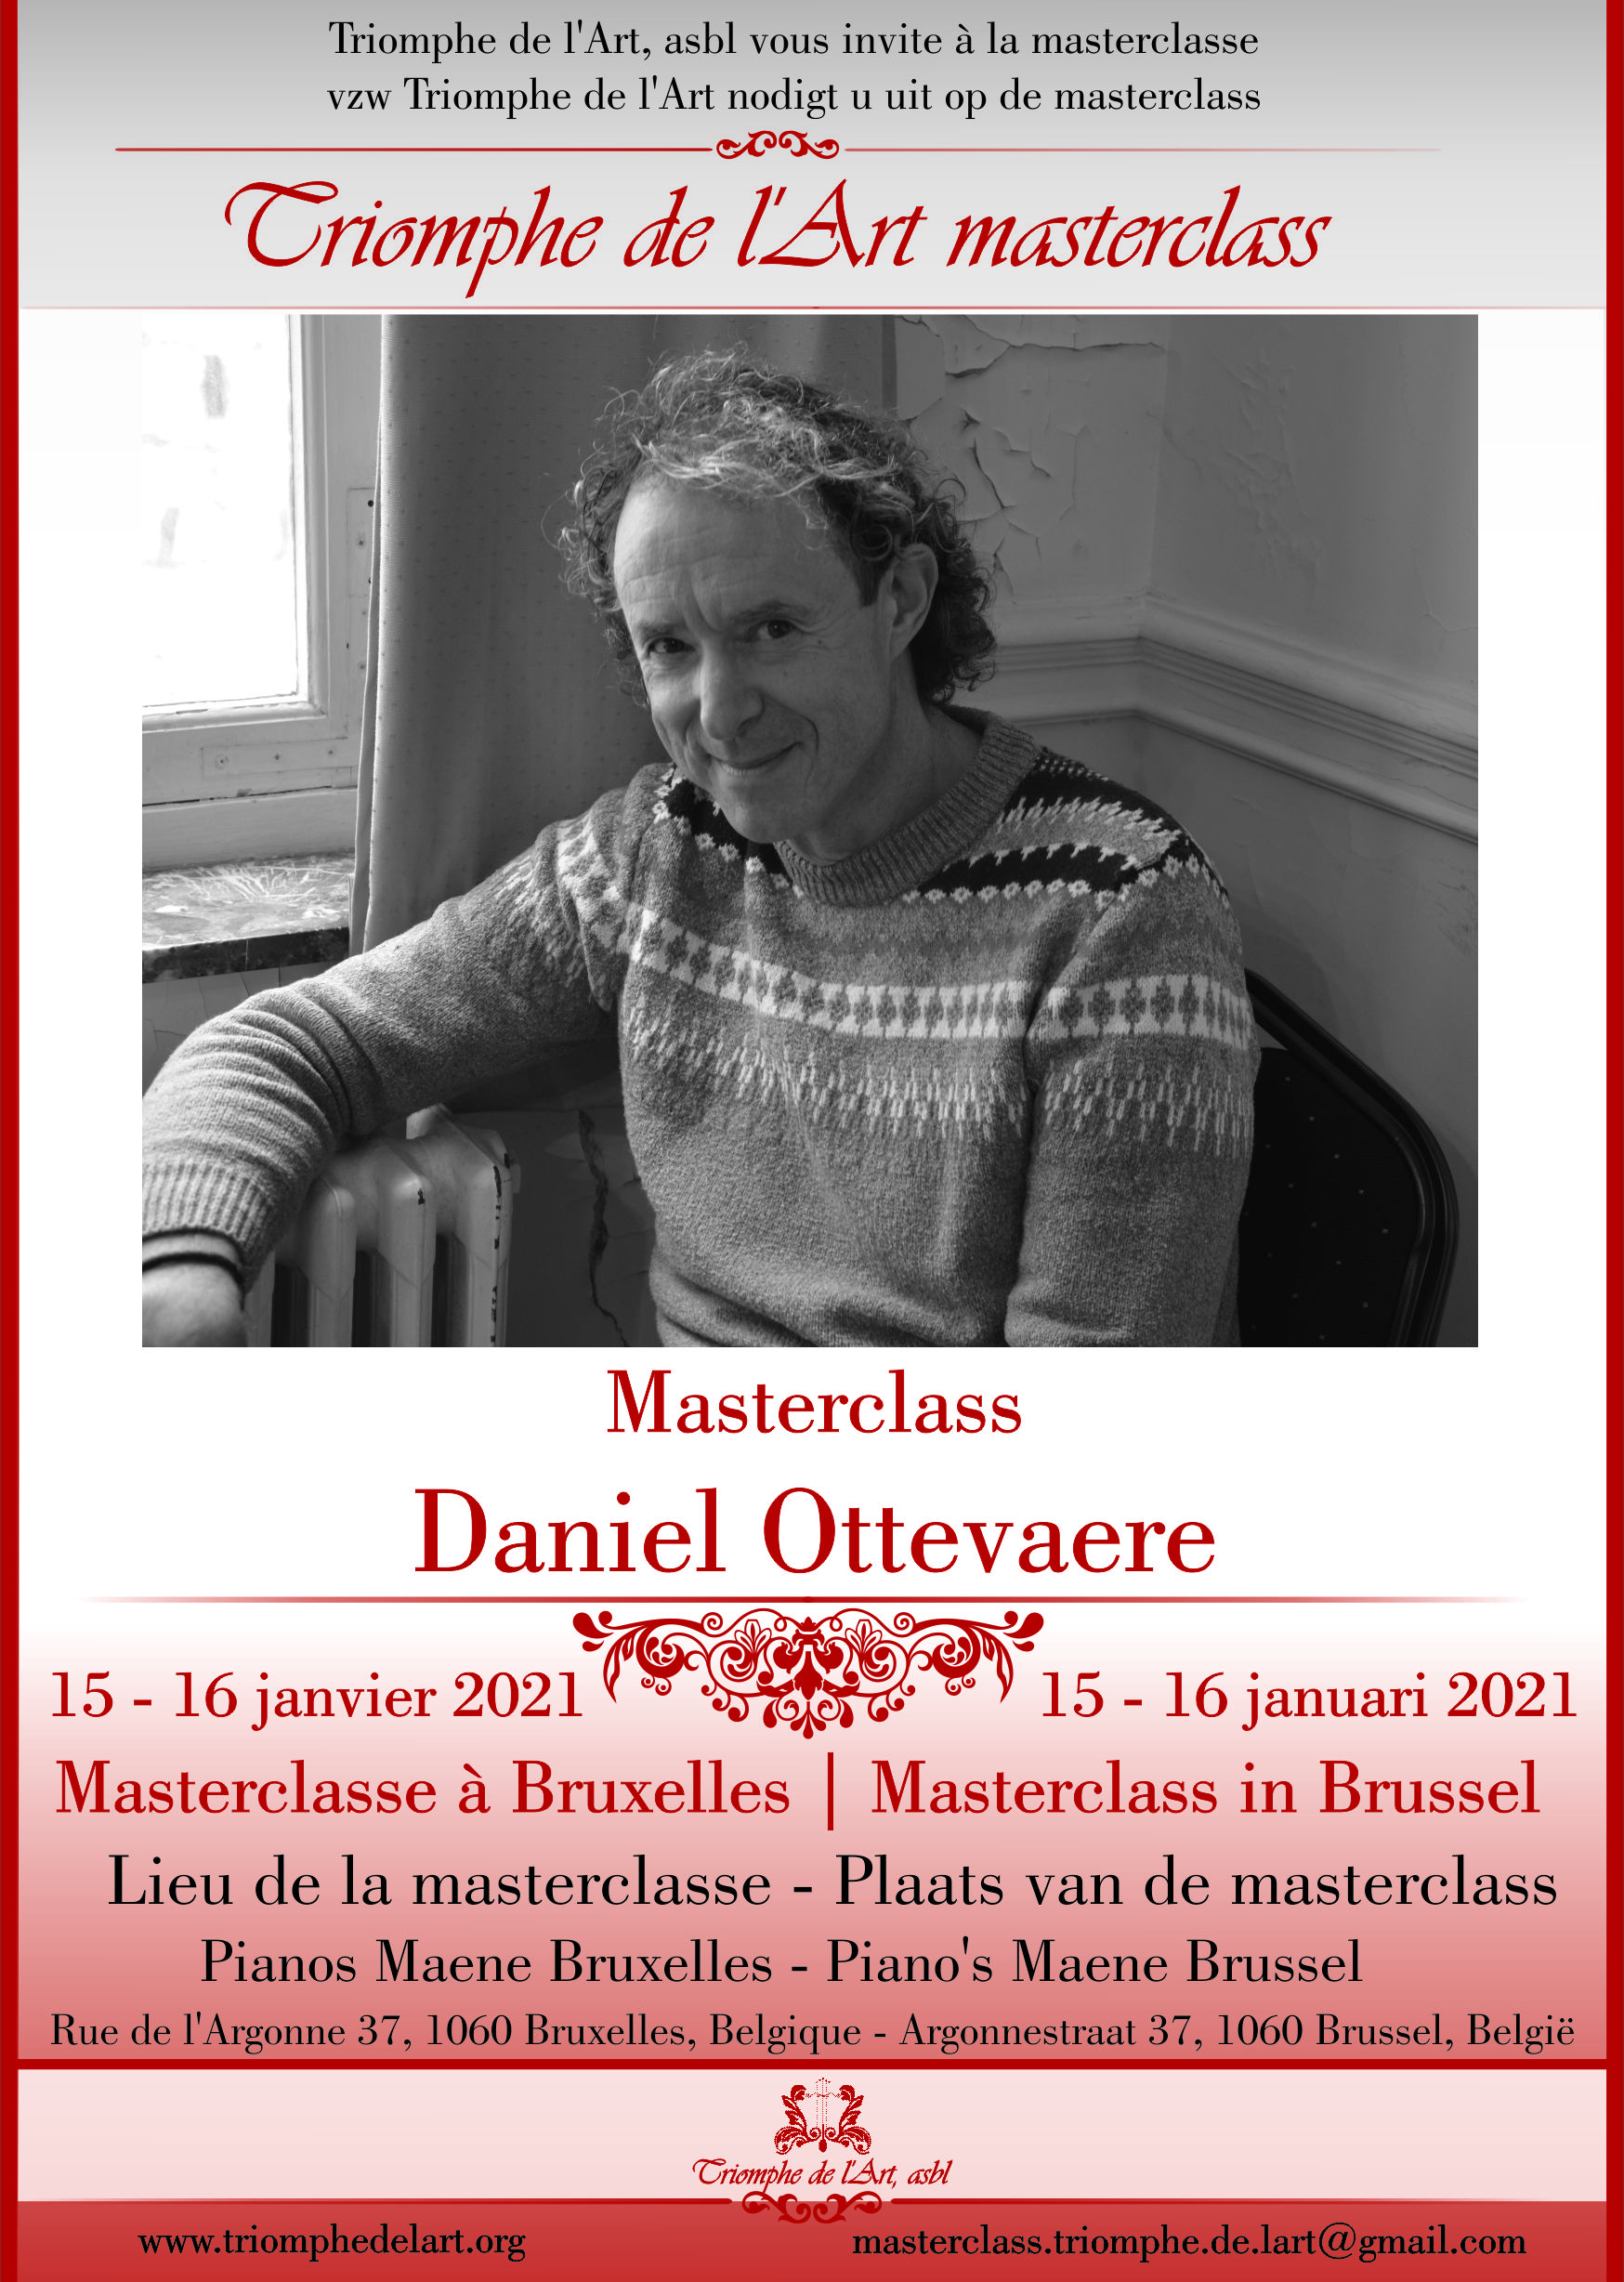 Daniel Ottevaere masterclasse janvier 2021